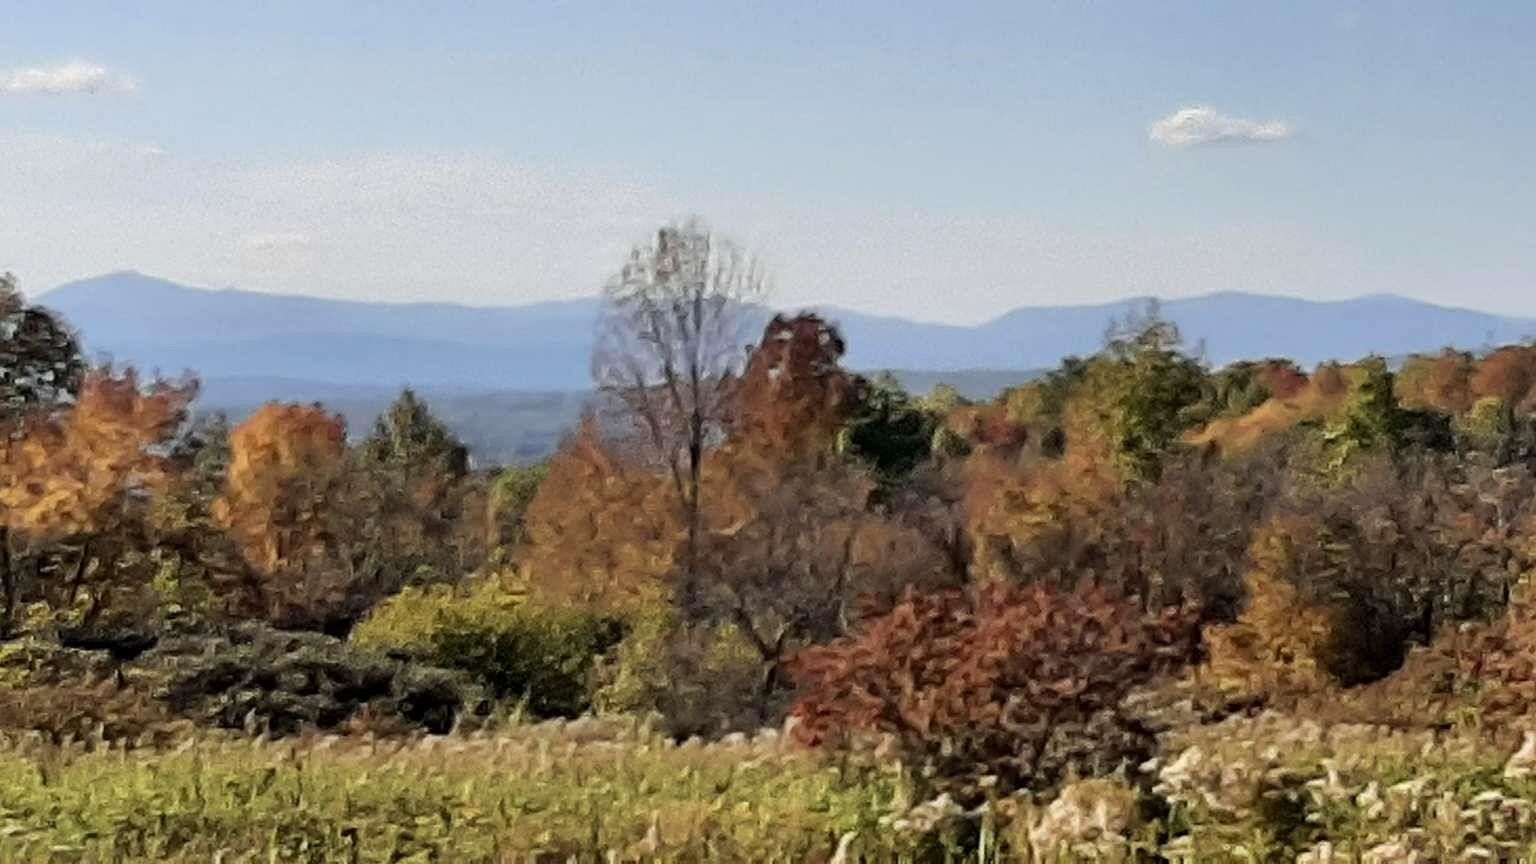 10.1 Acres of Land Castleton, Vermont, VT